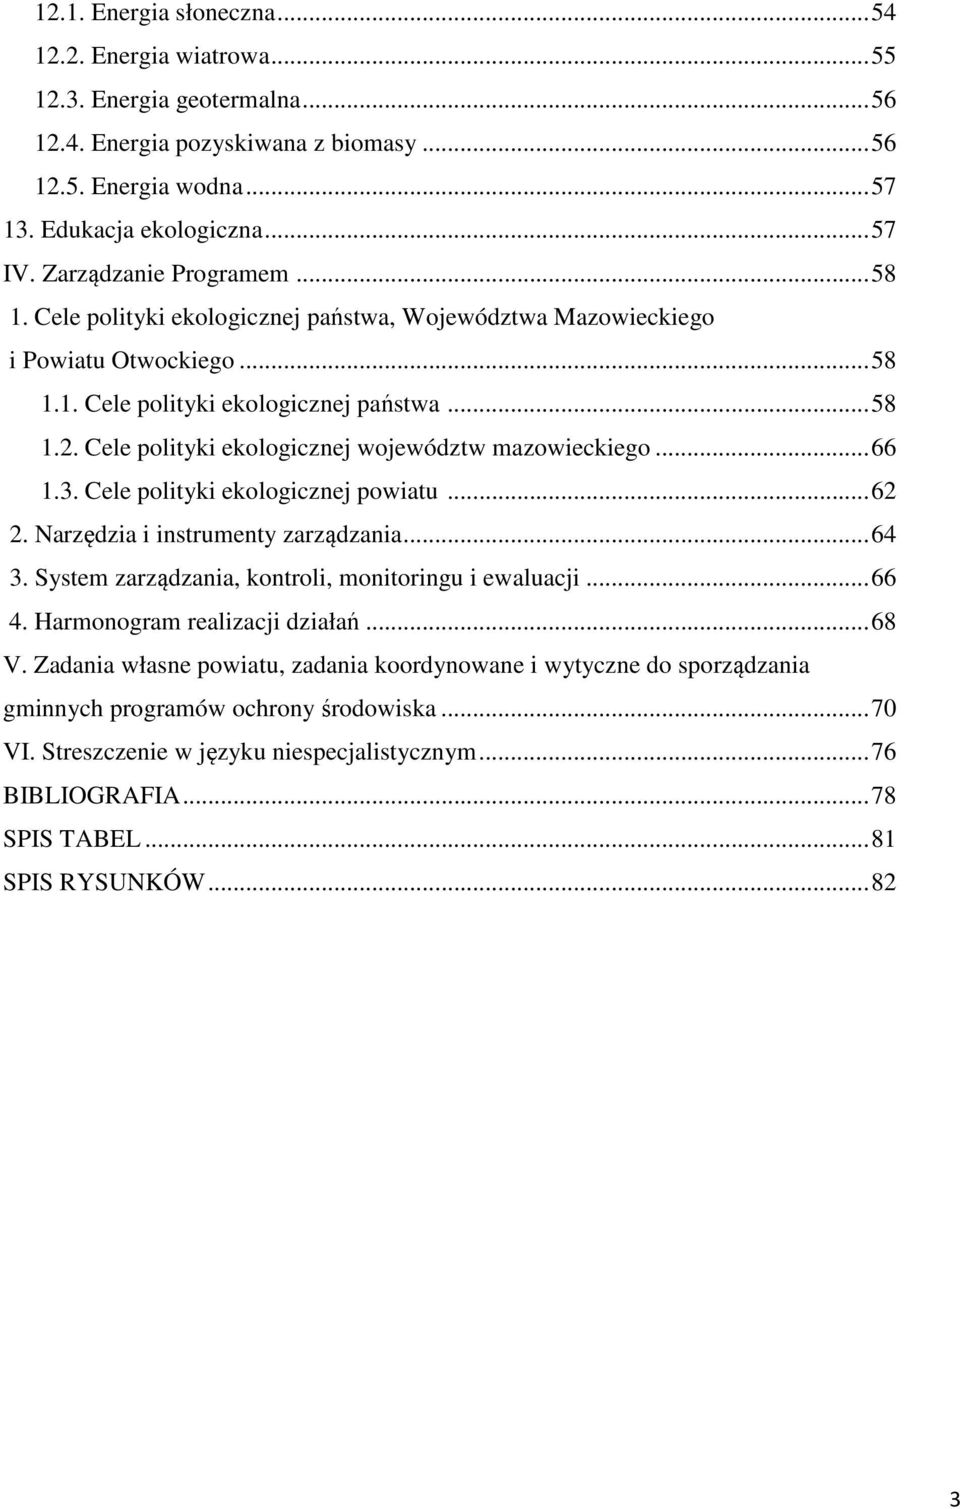 Cele polityki ekologicznej województw mazowieckiego... 66 1.3. Cele polityki ekologicznej powiatu... 62 2. Narzędzia i instrumenty zarządzania... 64 3.